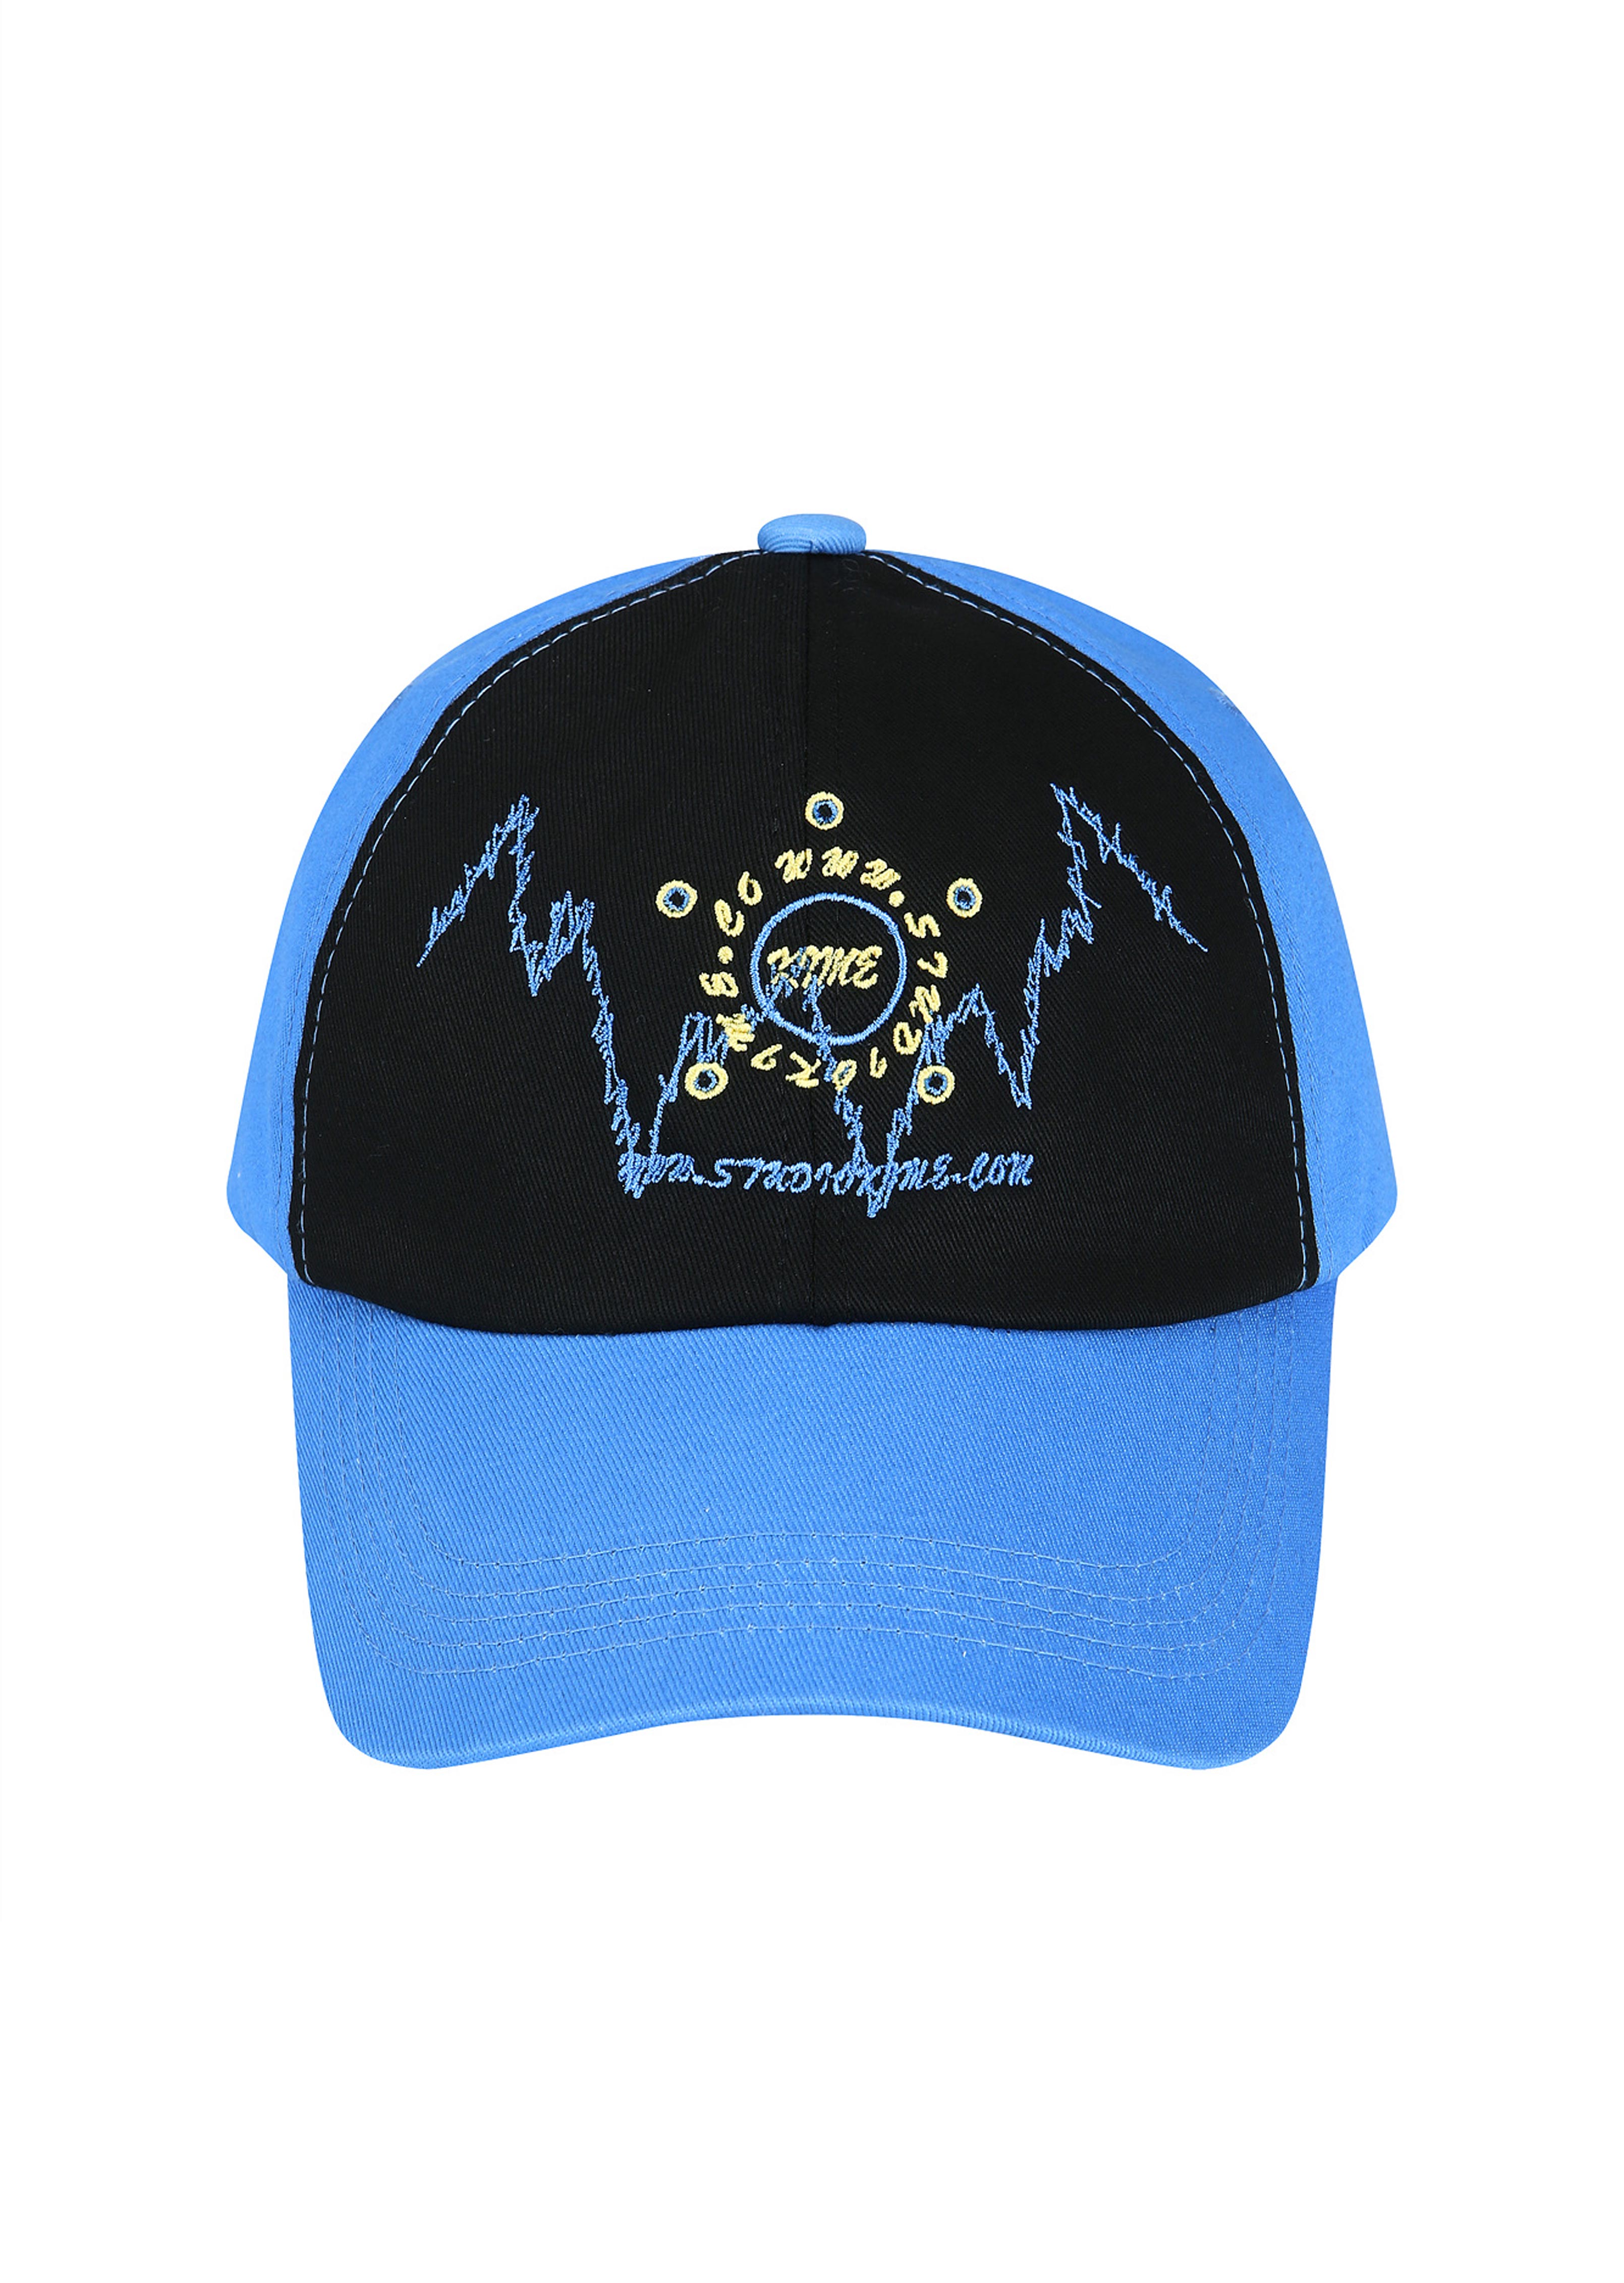 GRAFFITI BALL CAP (BLUE)